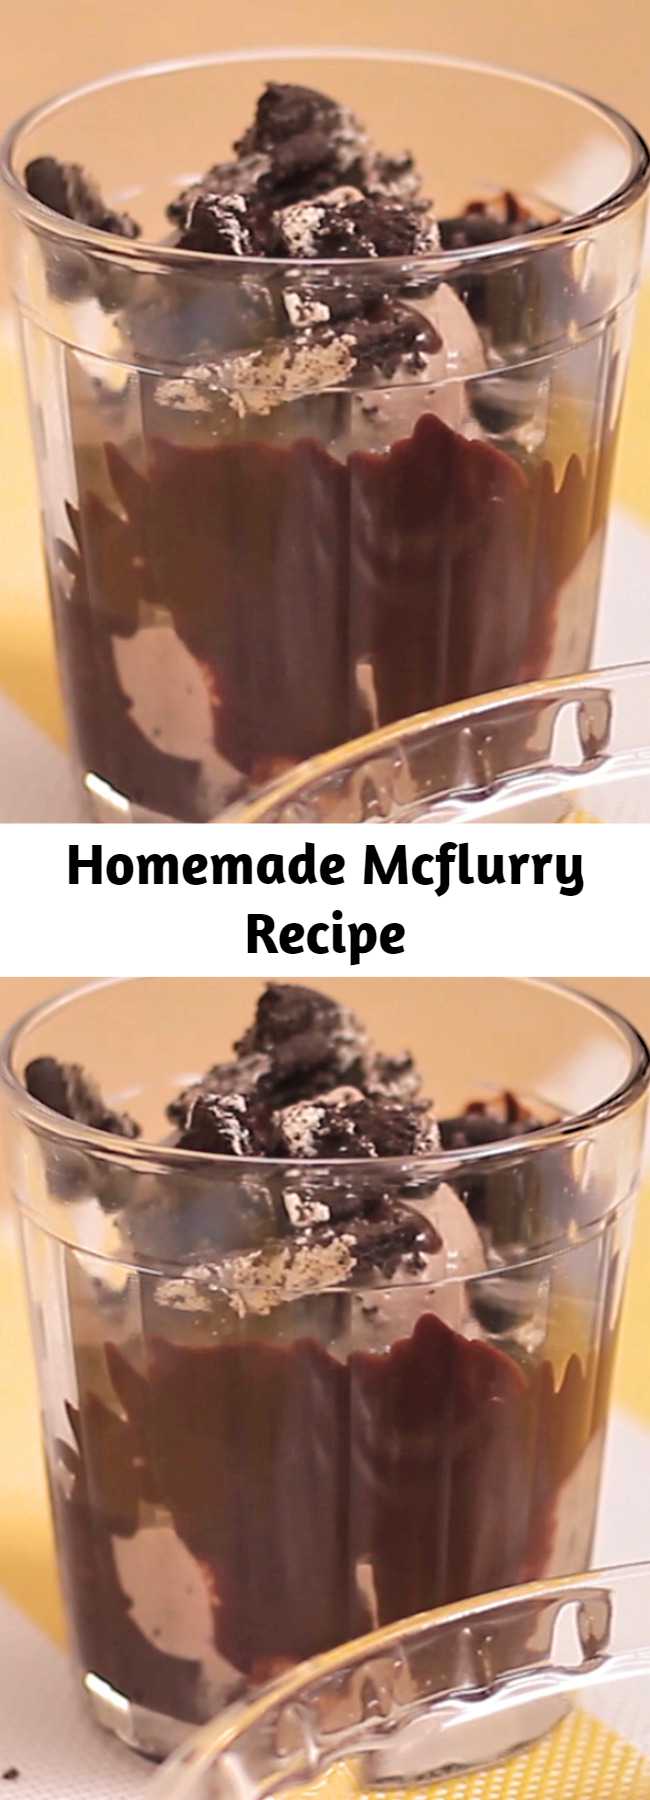 Homemade Mcflurry Recipe